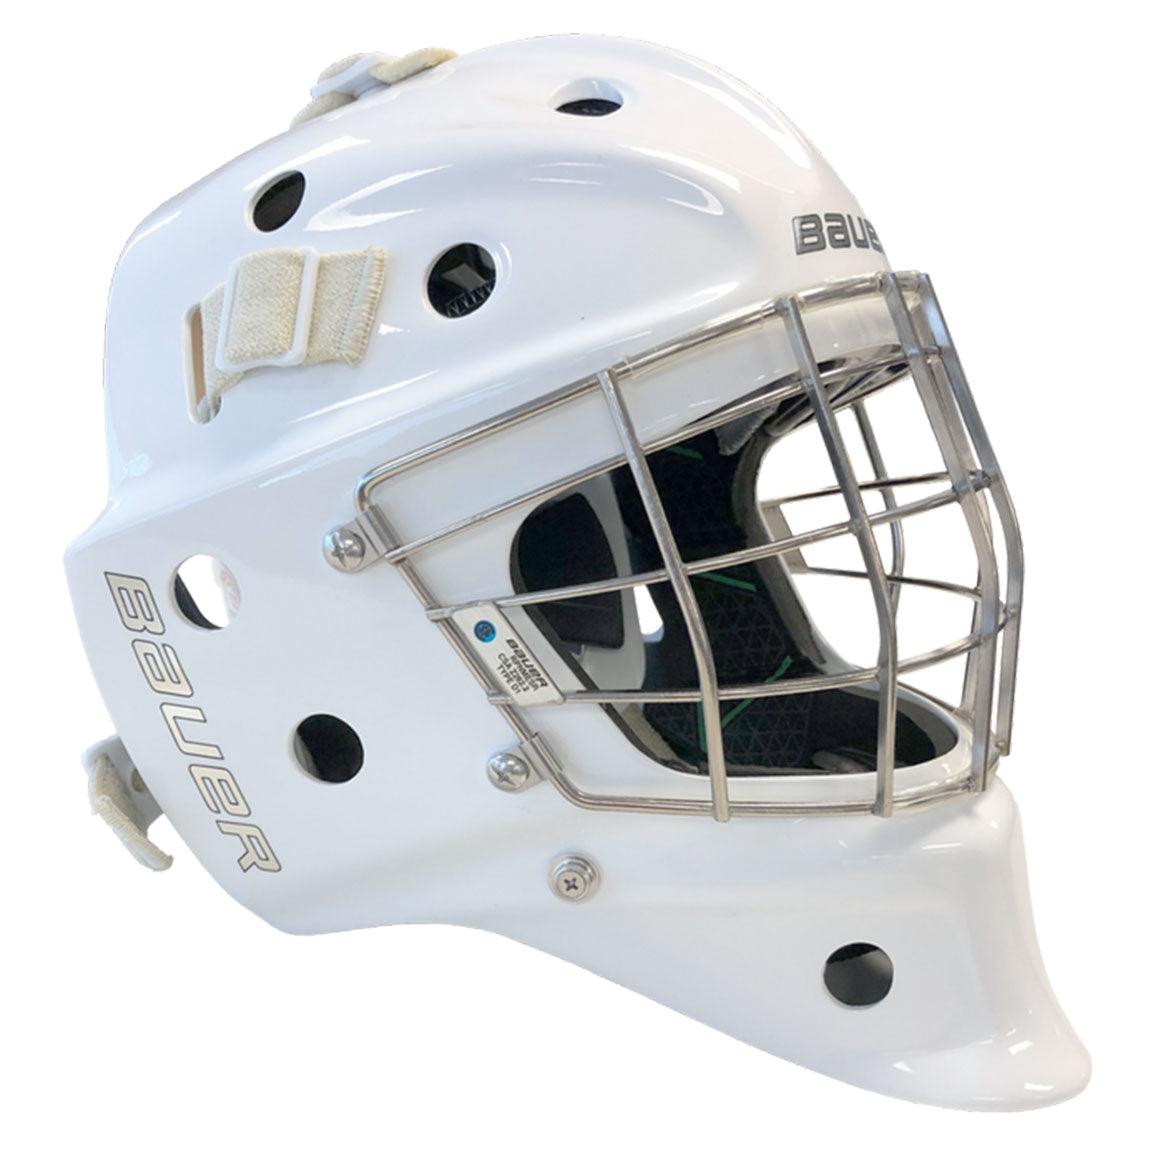 NME VTX Goal Mask - Senior - Sports Excellence